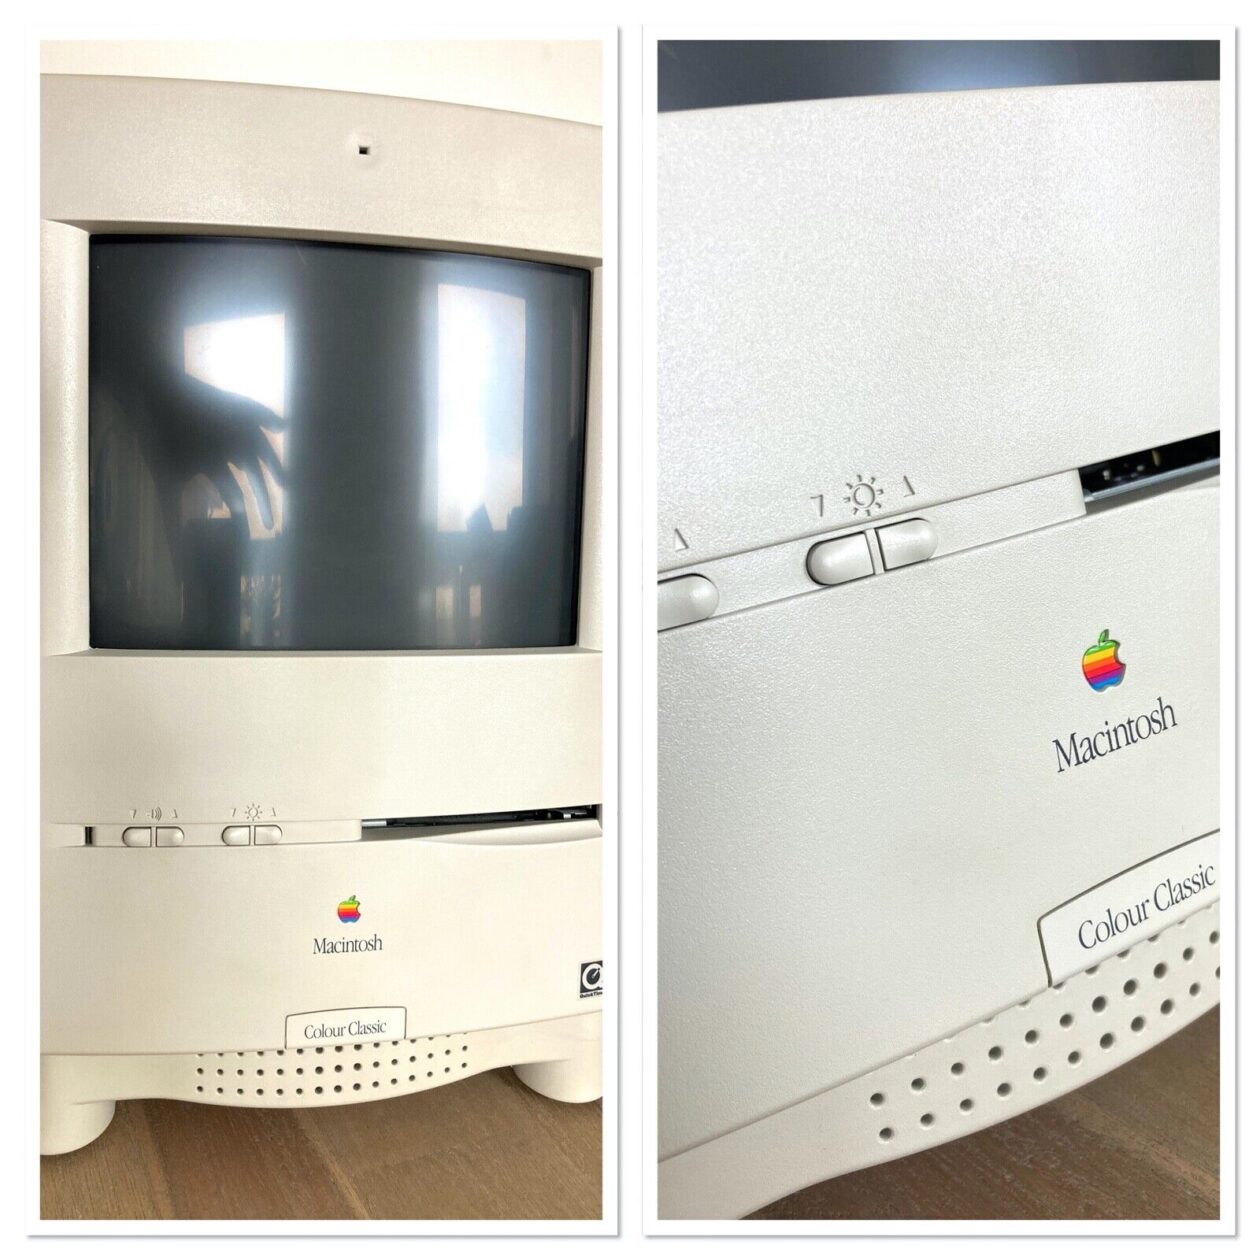 Macintosh Color Classic em leilão